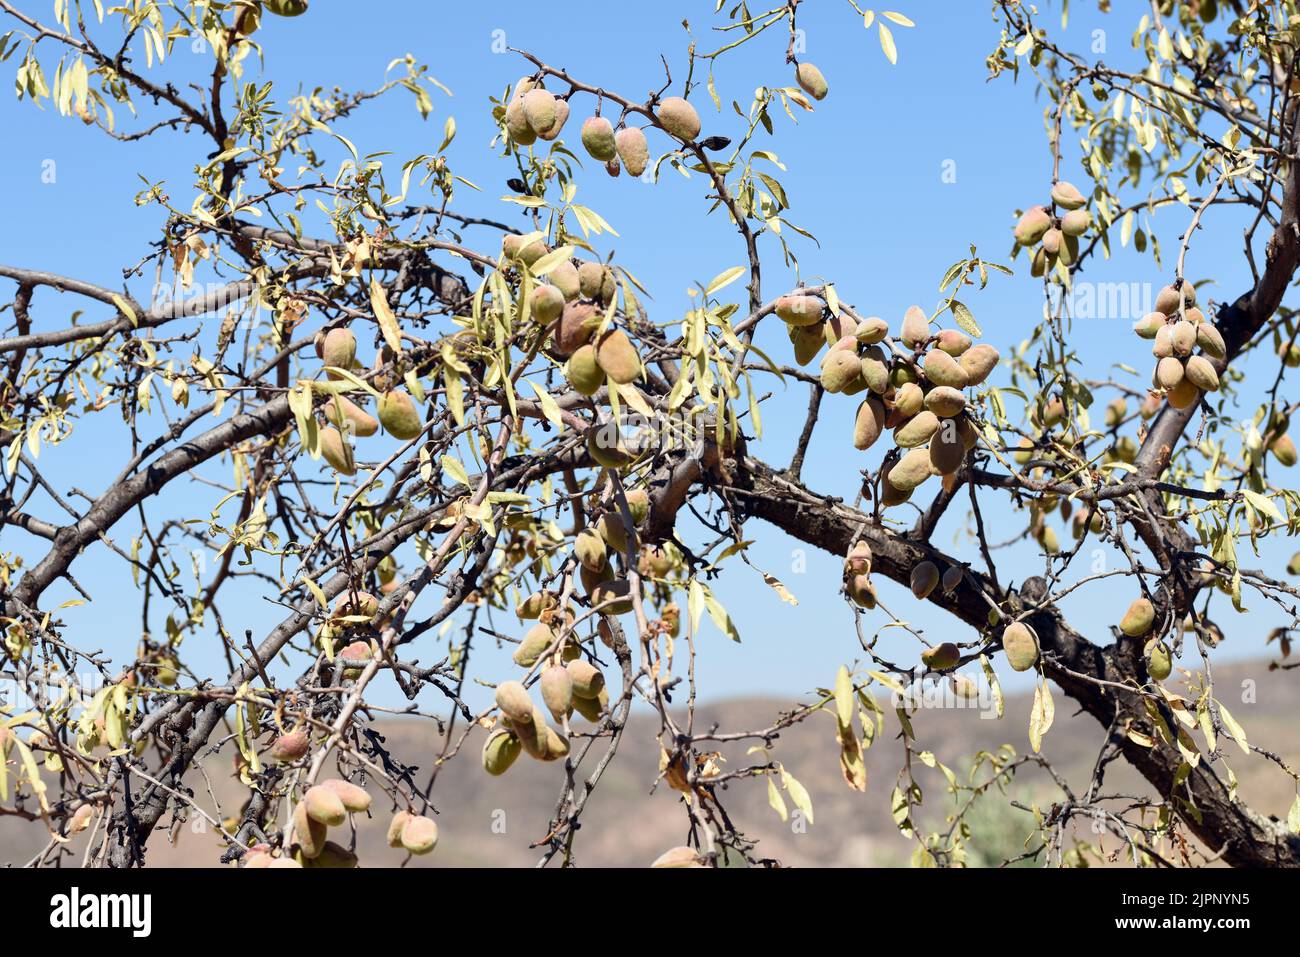 Detalle de las ramas del árbol del almendro cargadas de sus frutos a finales de agosto Foto Stock